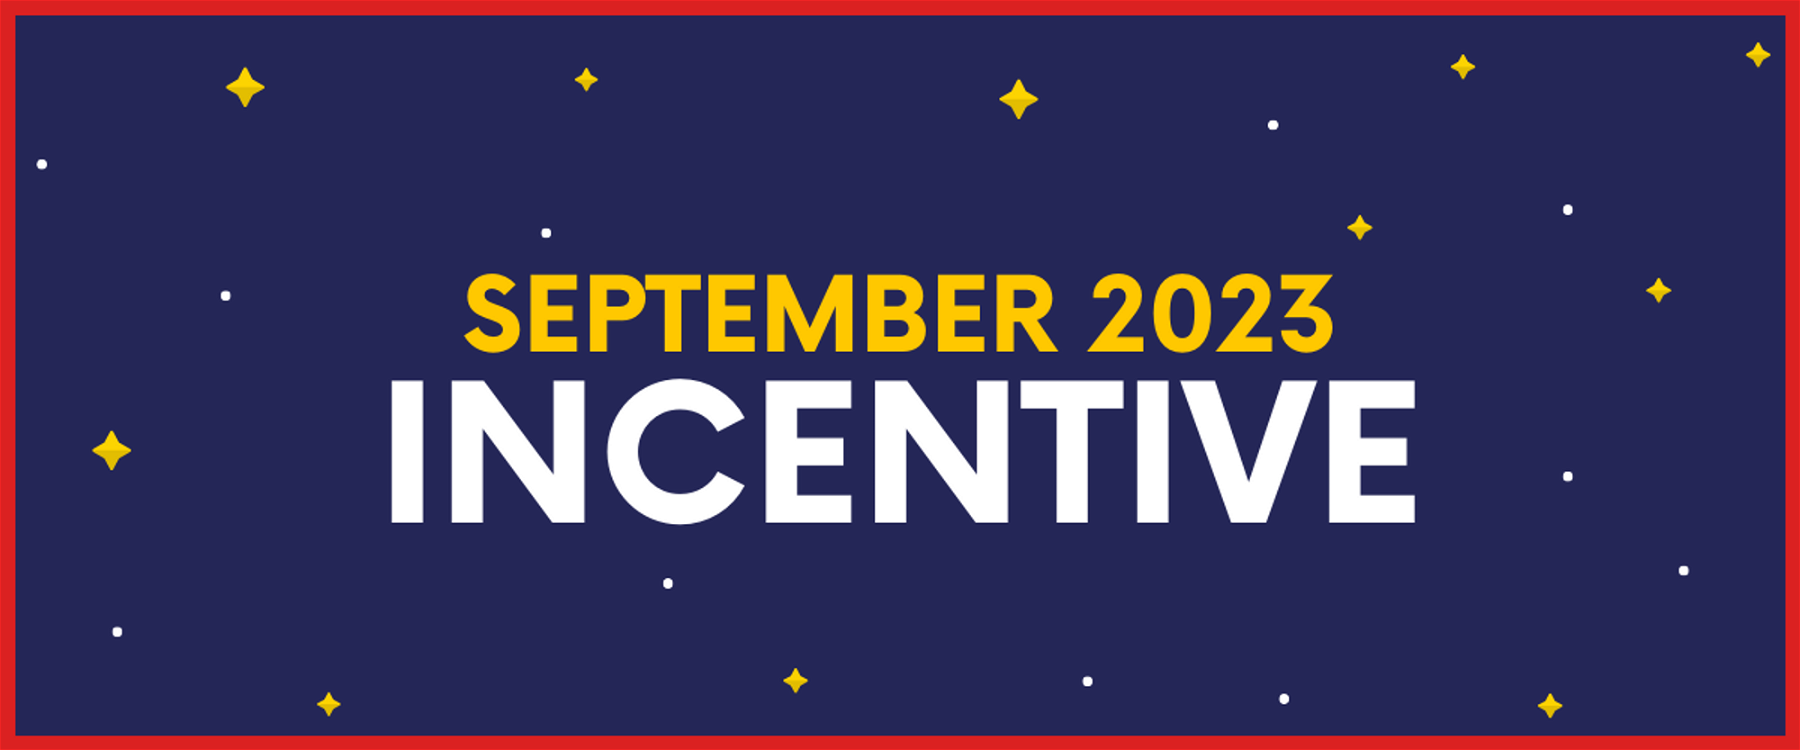 September 2023 Incentive